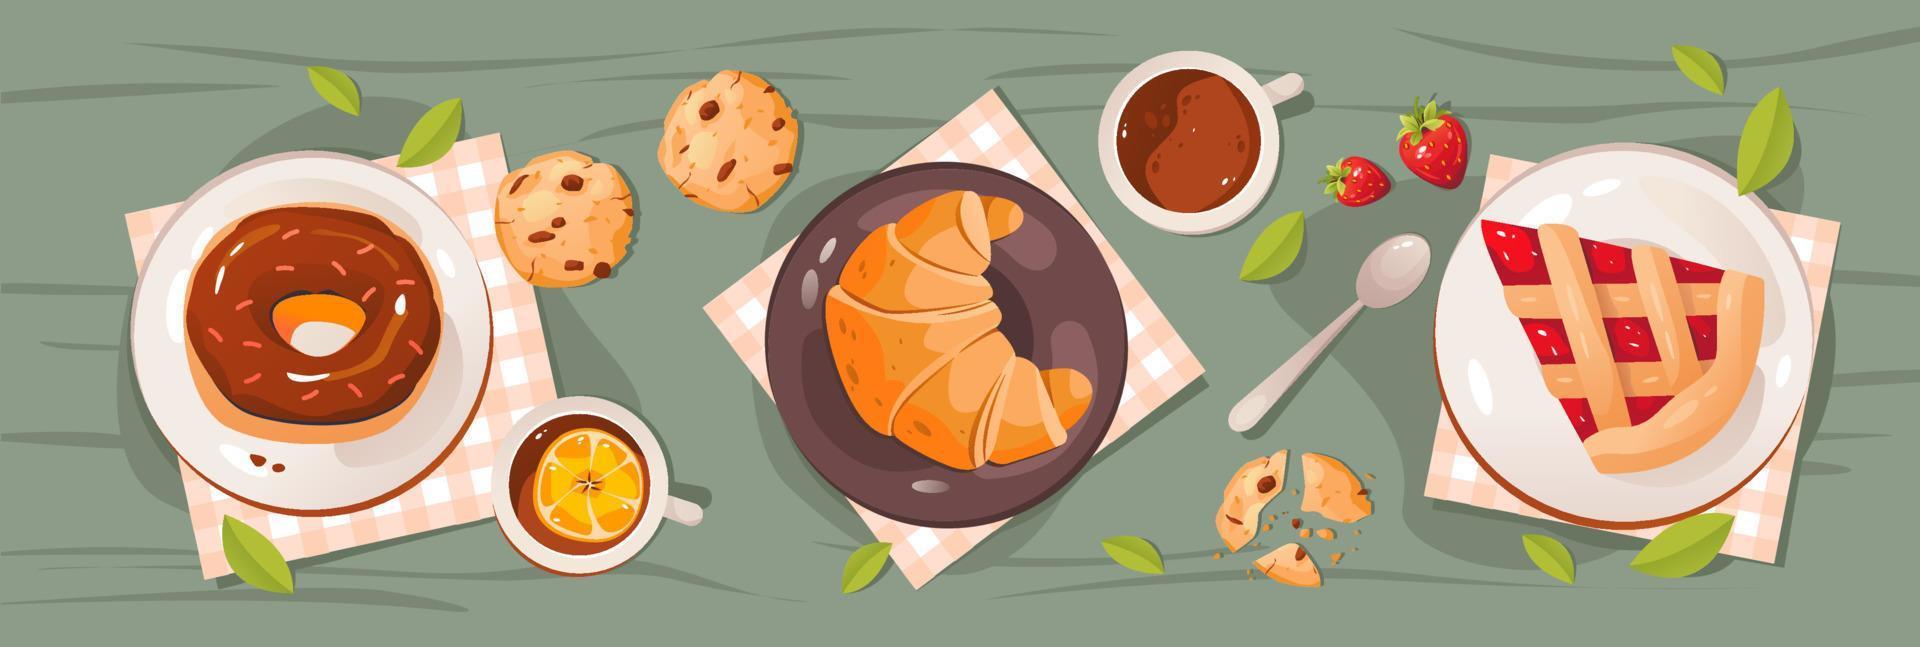 café da manhã na natureza. um conjunto de produtos de festa do chá, donuts, torta de morango, croissant, biscoitos, café e chá. ilustração vetorial plana vetor